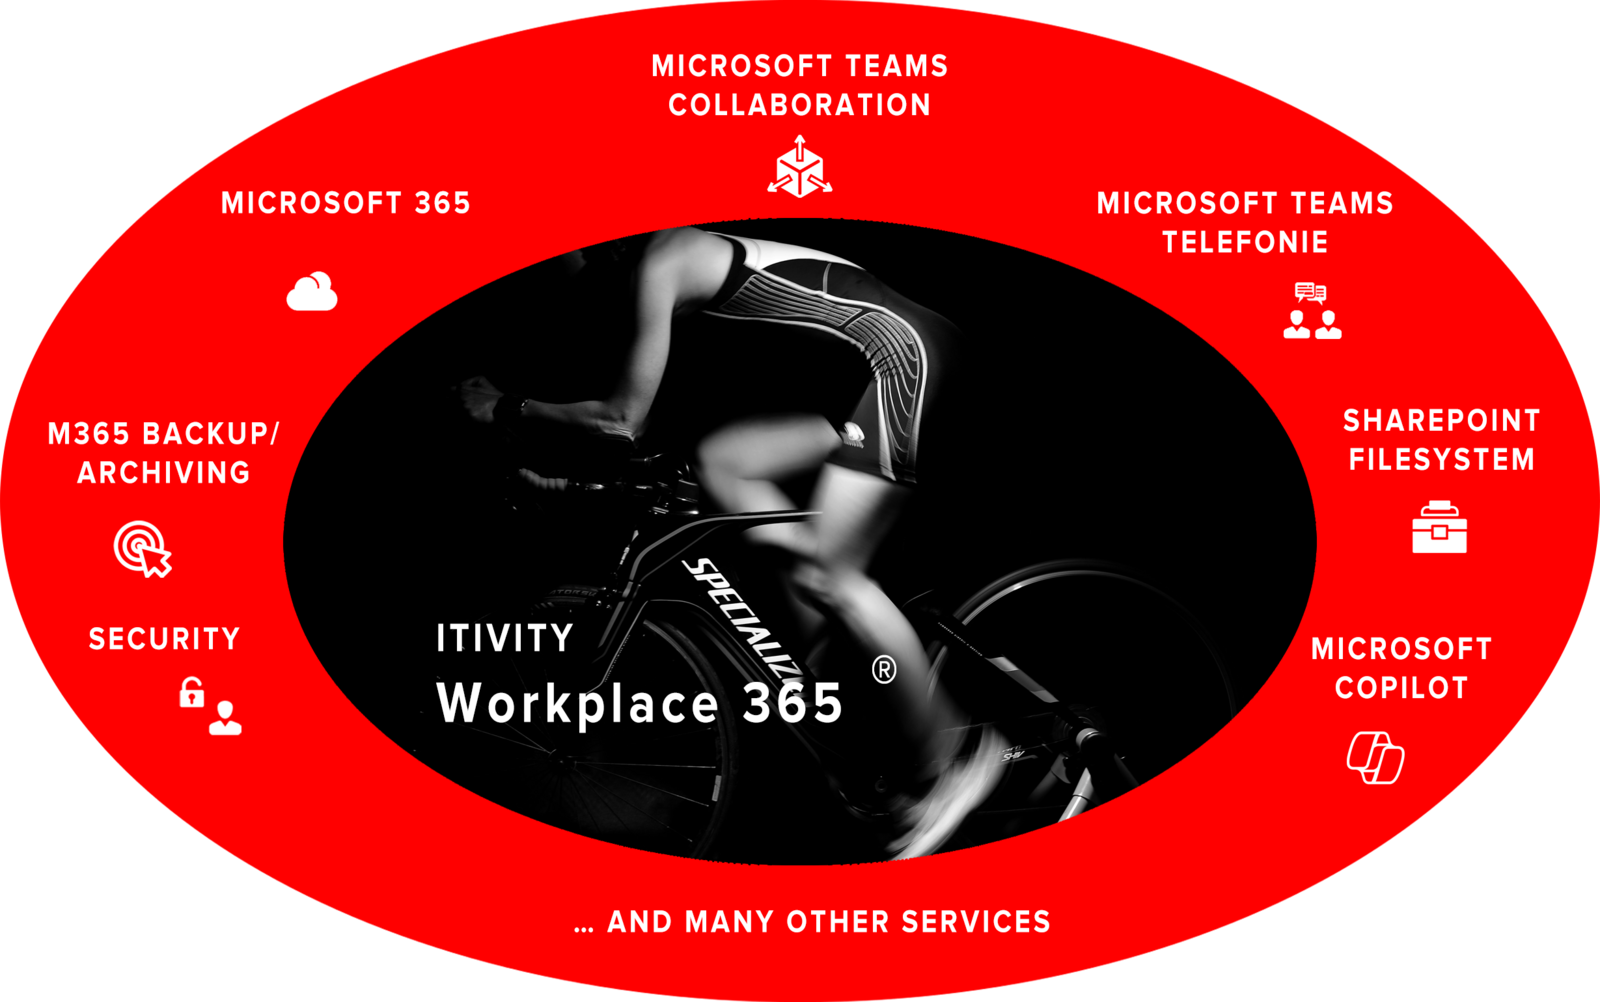 ITIVITY - Microsoft 365